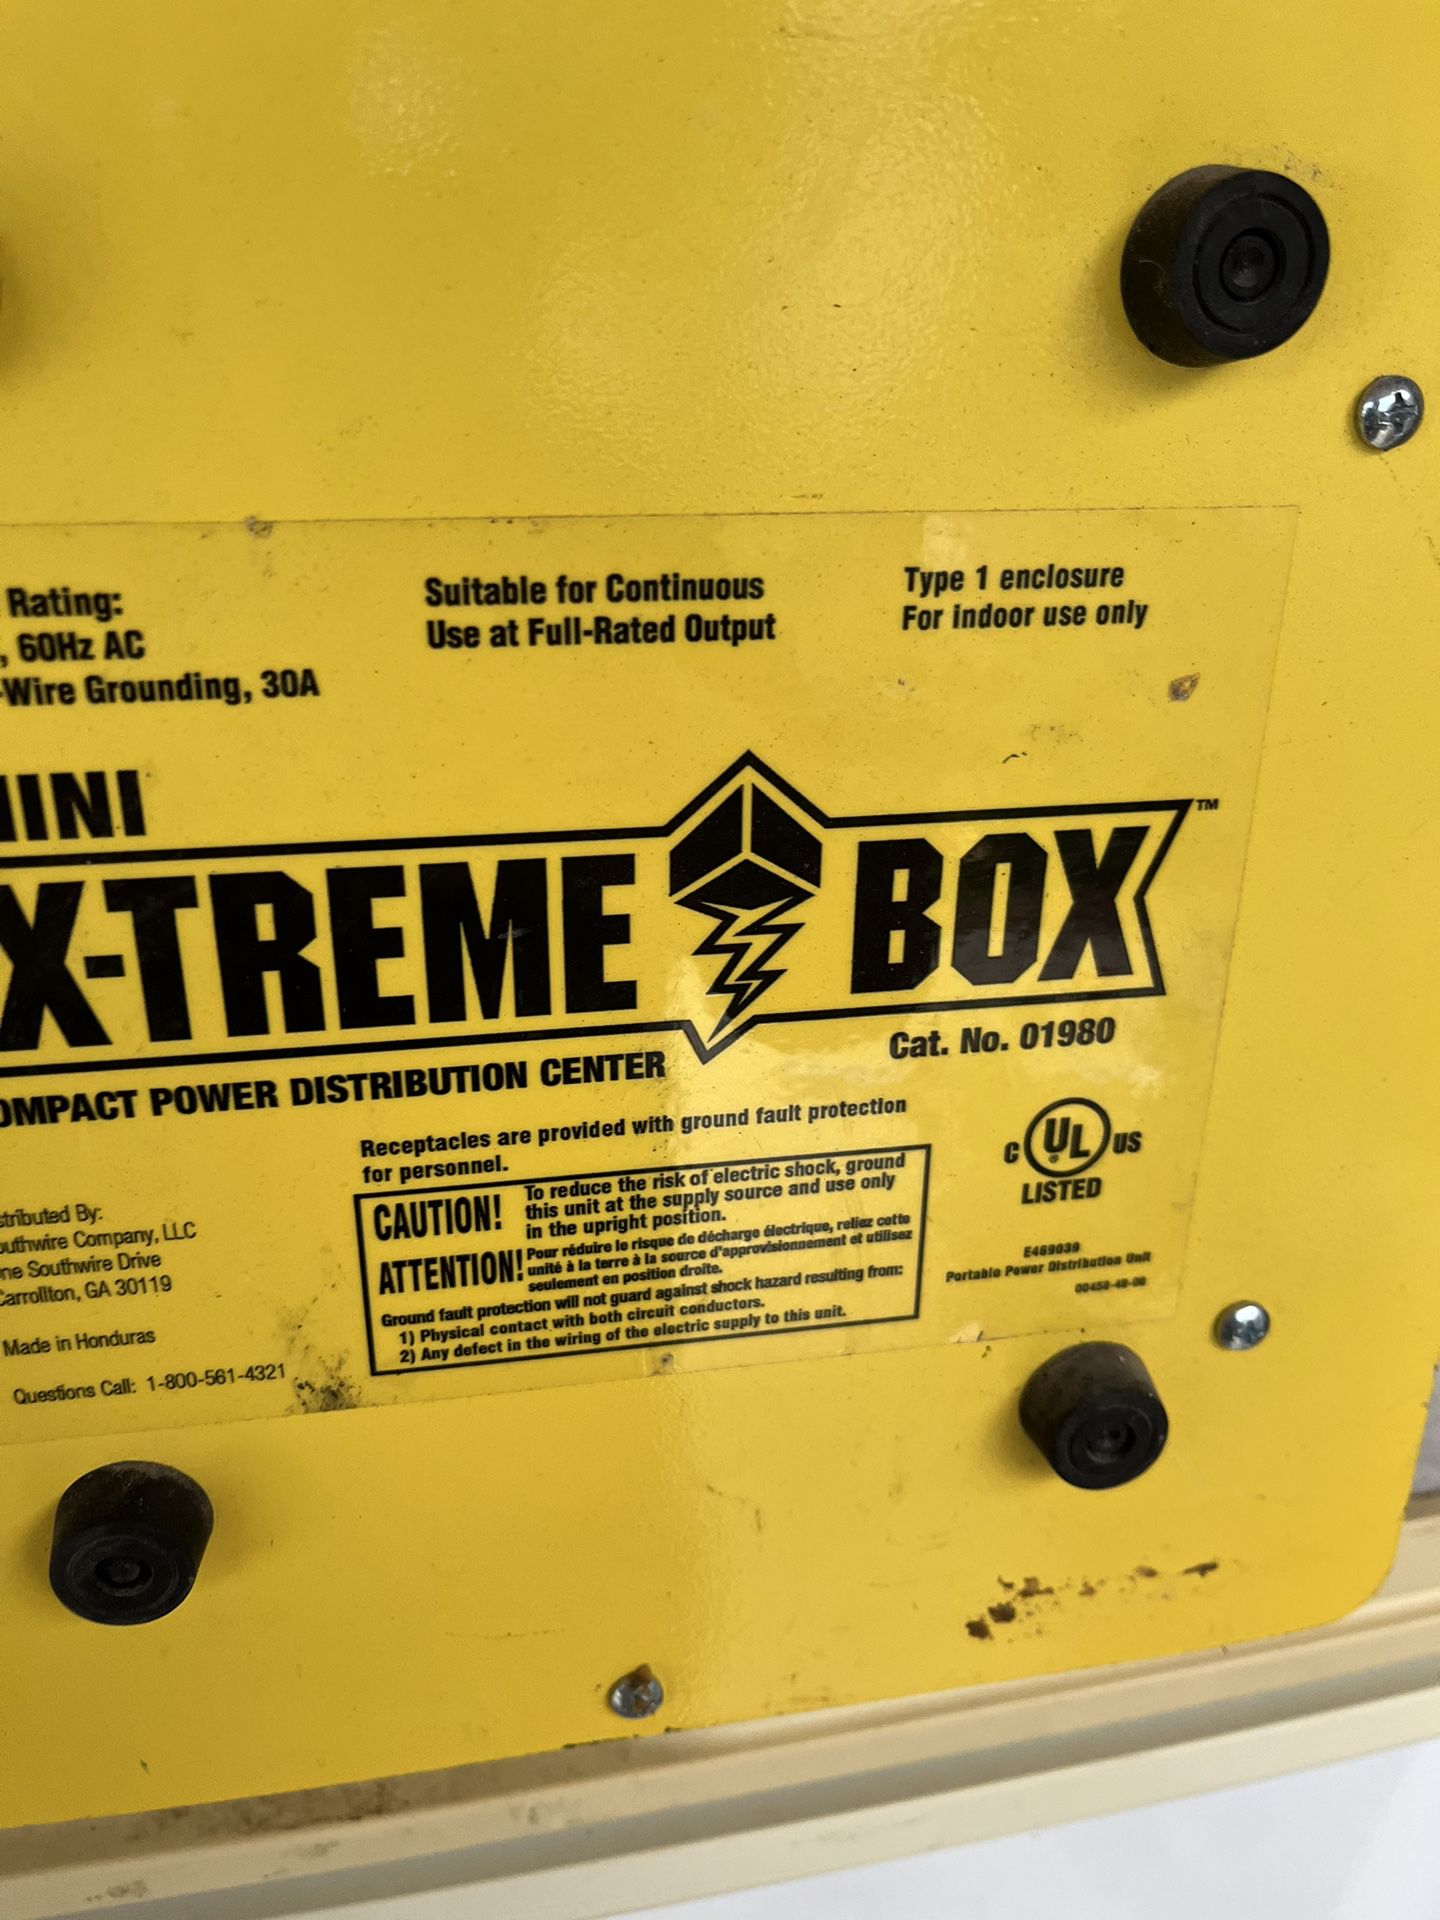 X-tremen Box 